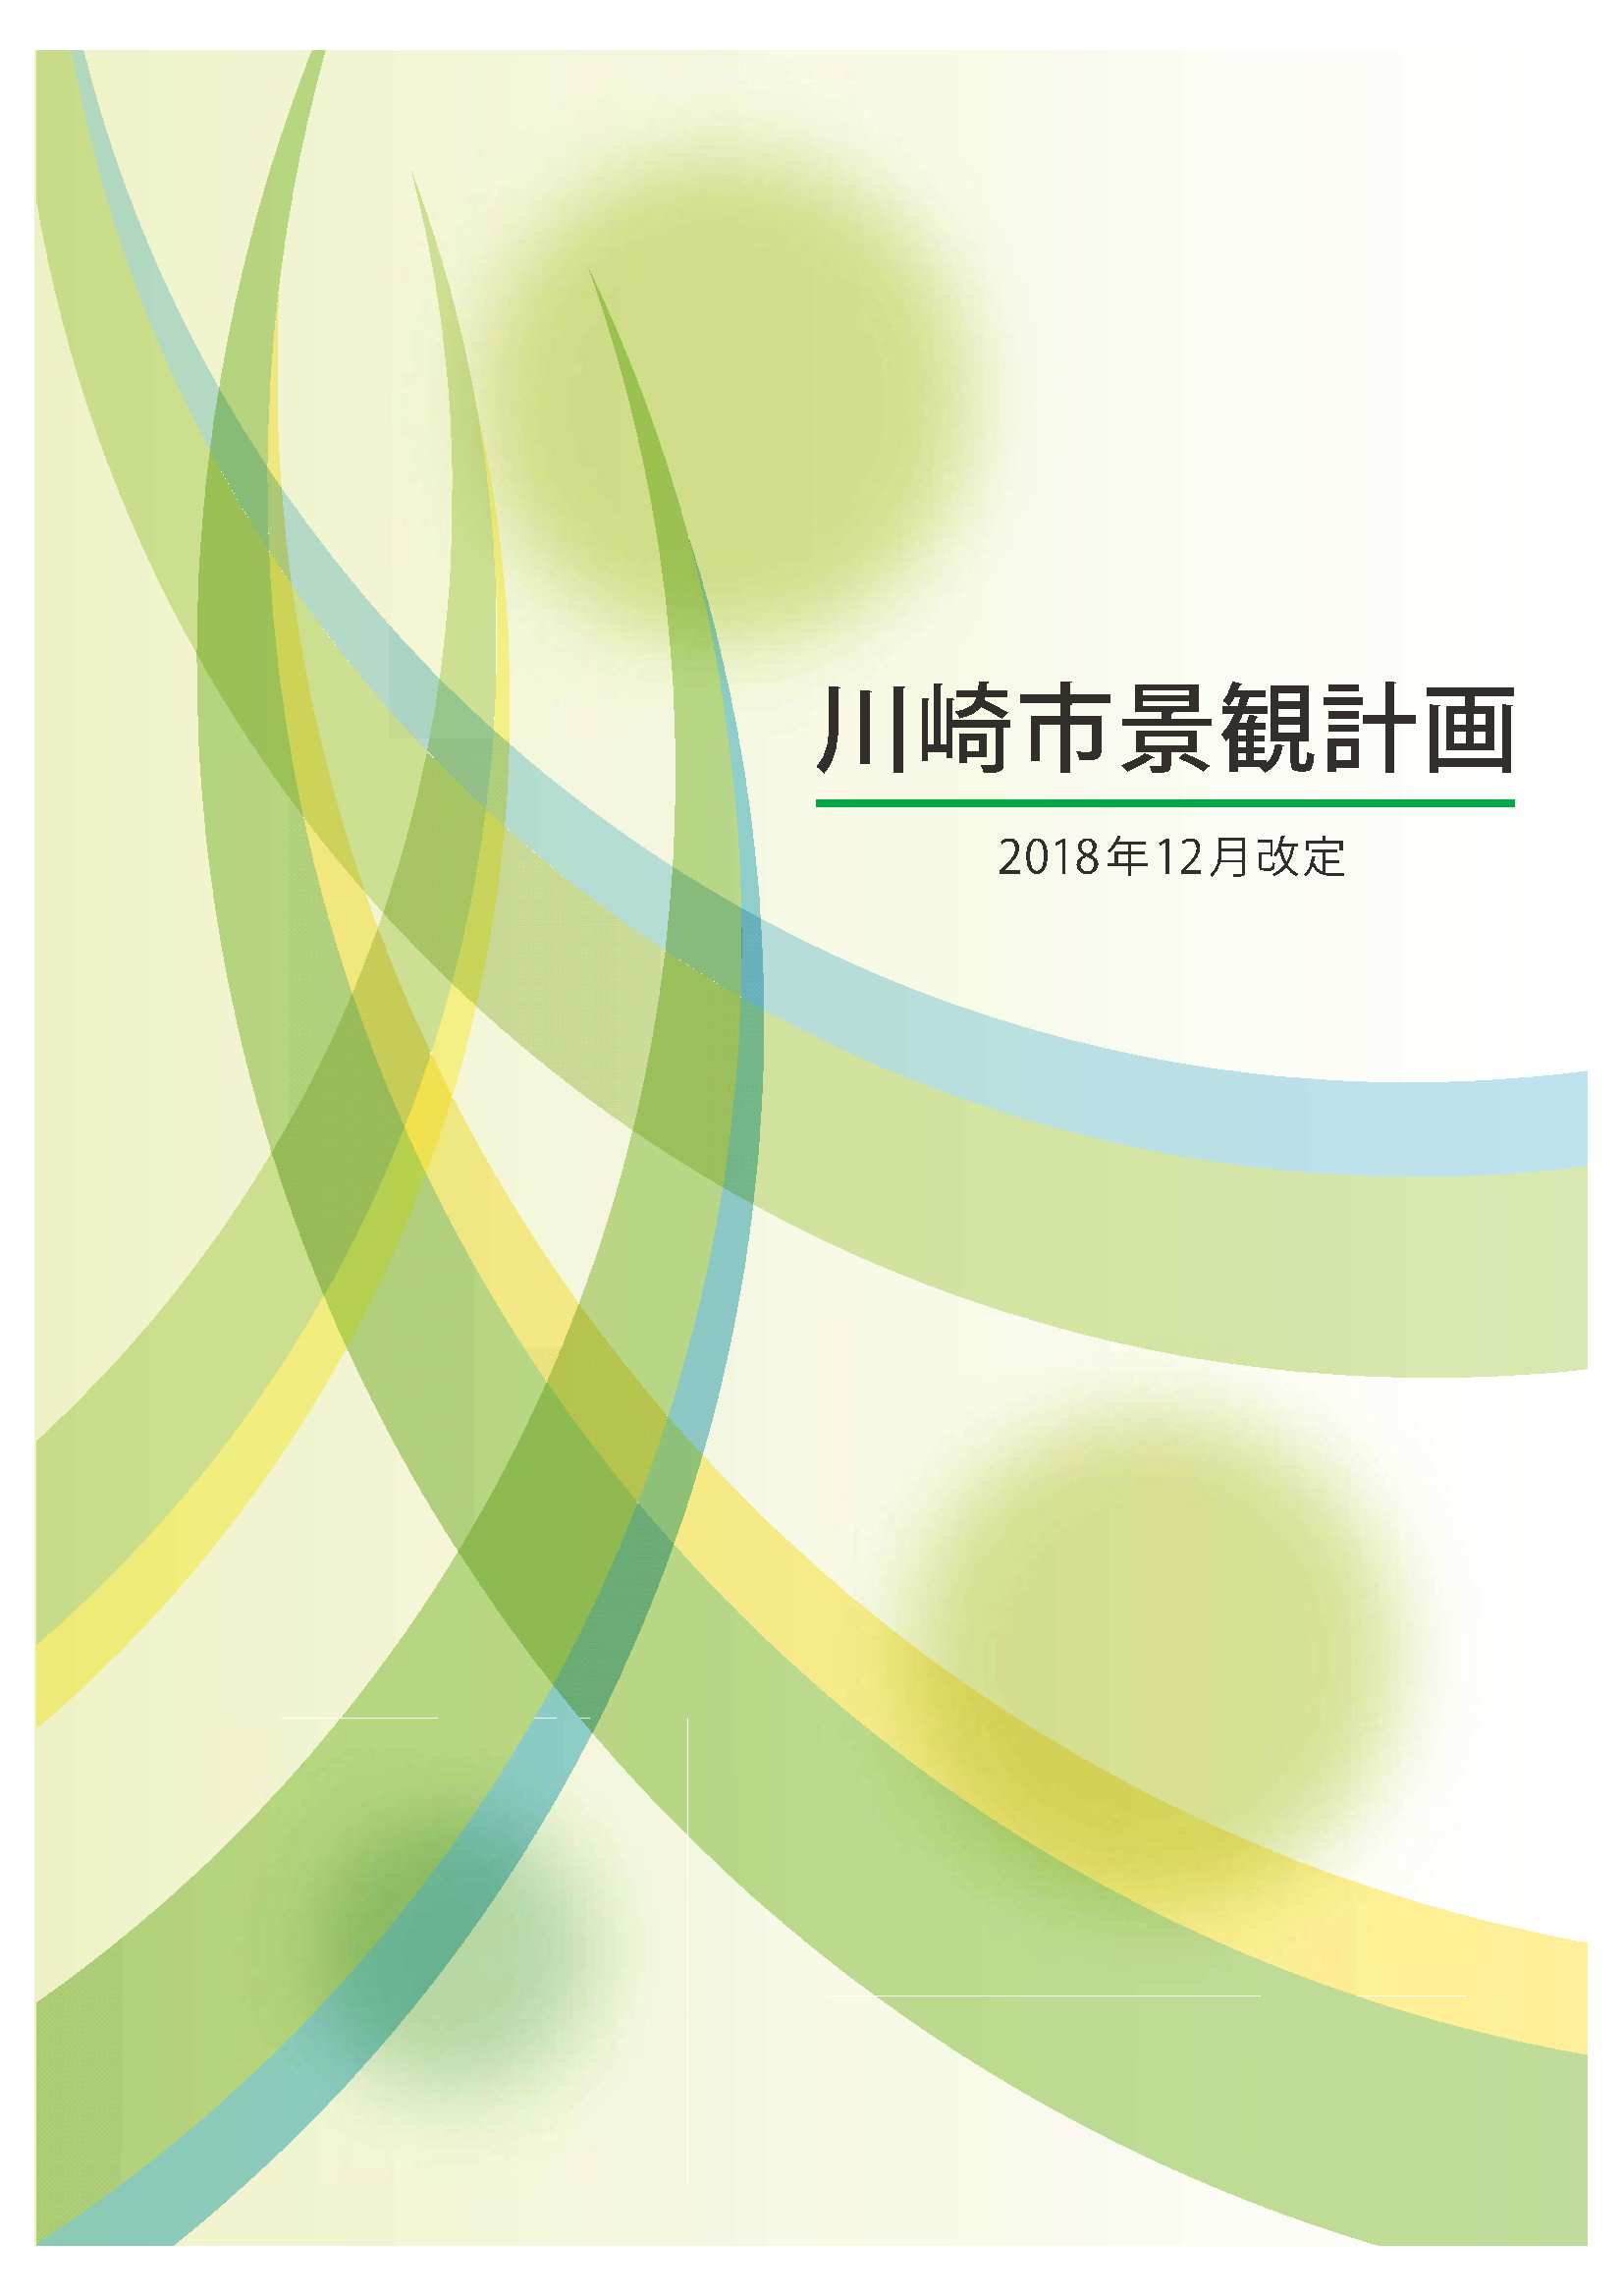 川崎市景観計画（書籍版）表紙（2018（平成30）年改定）